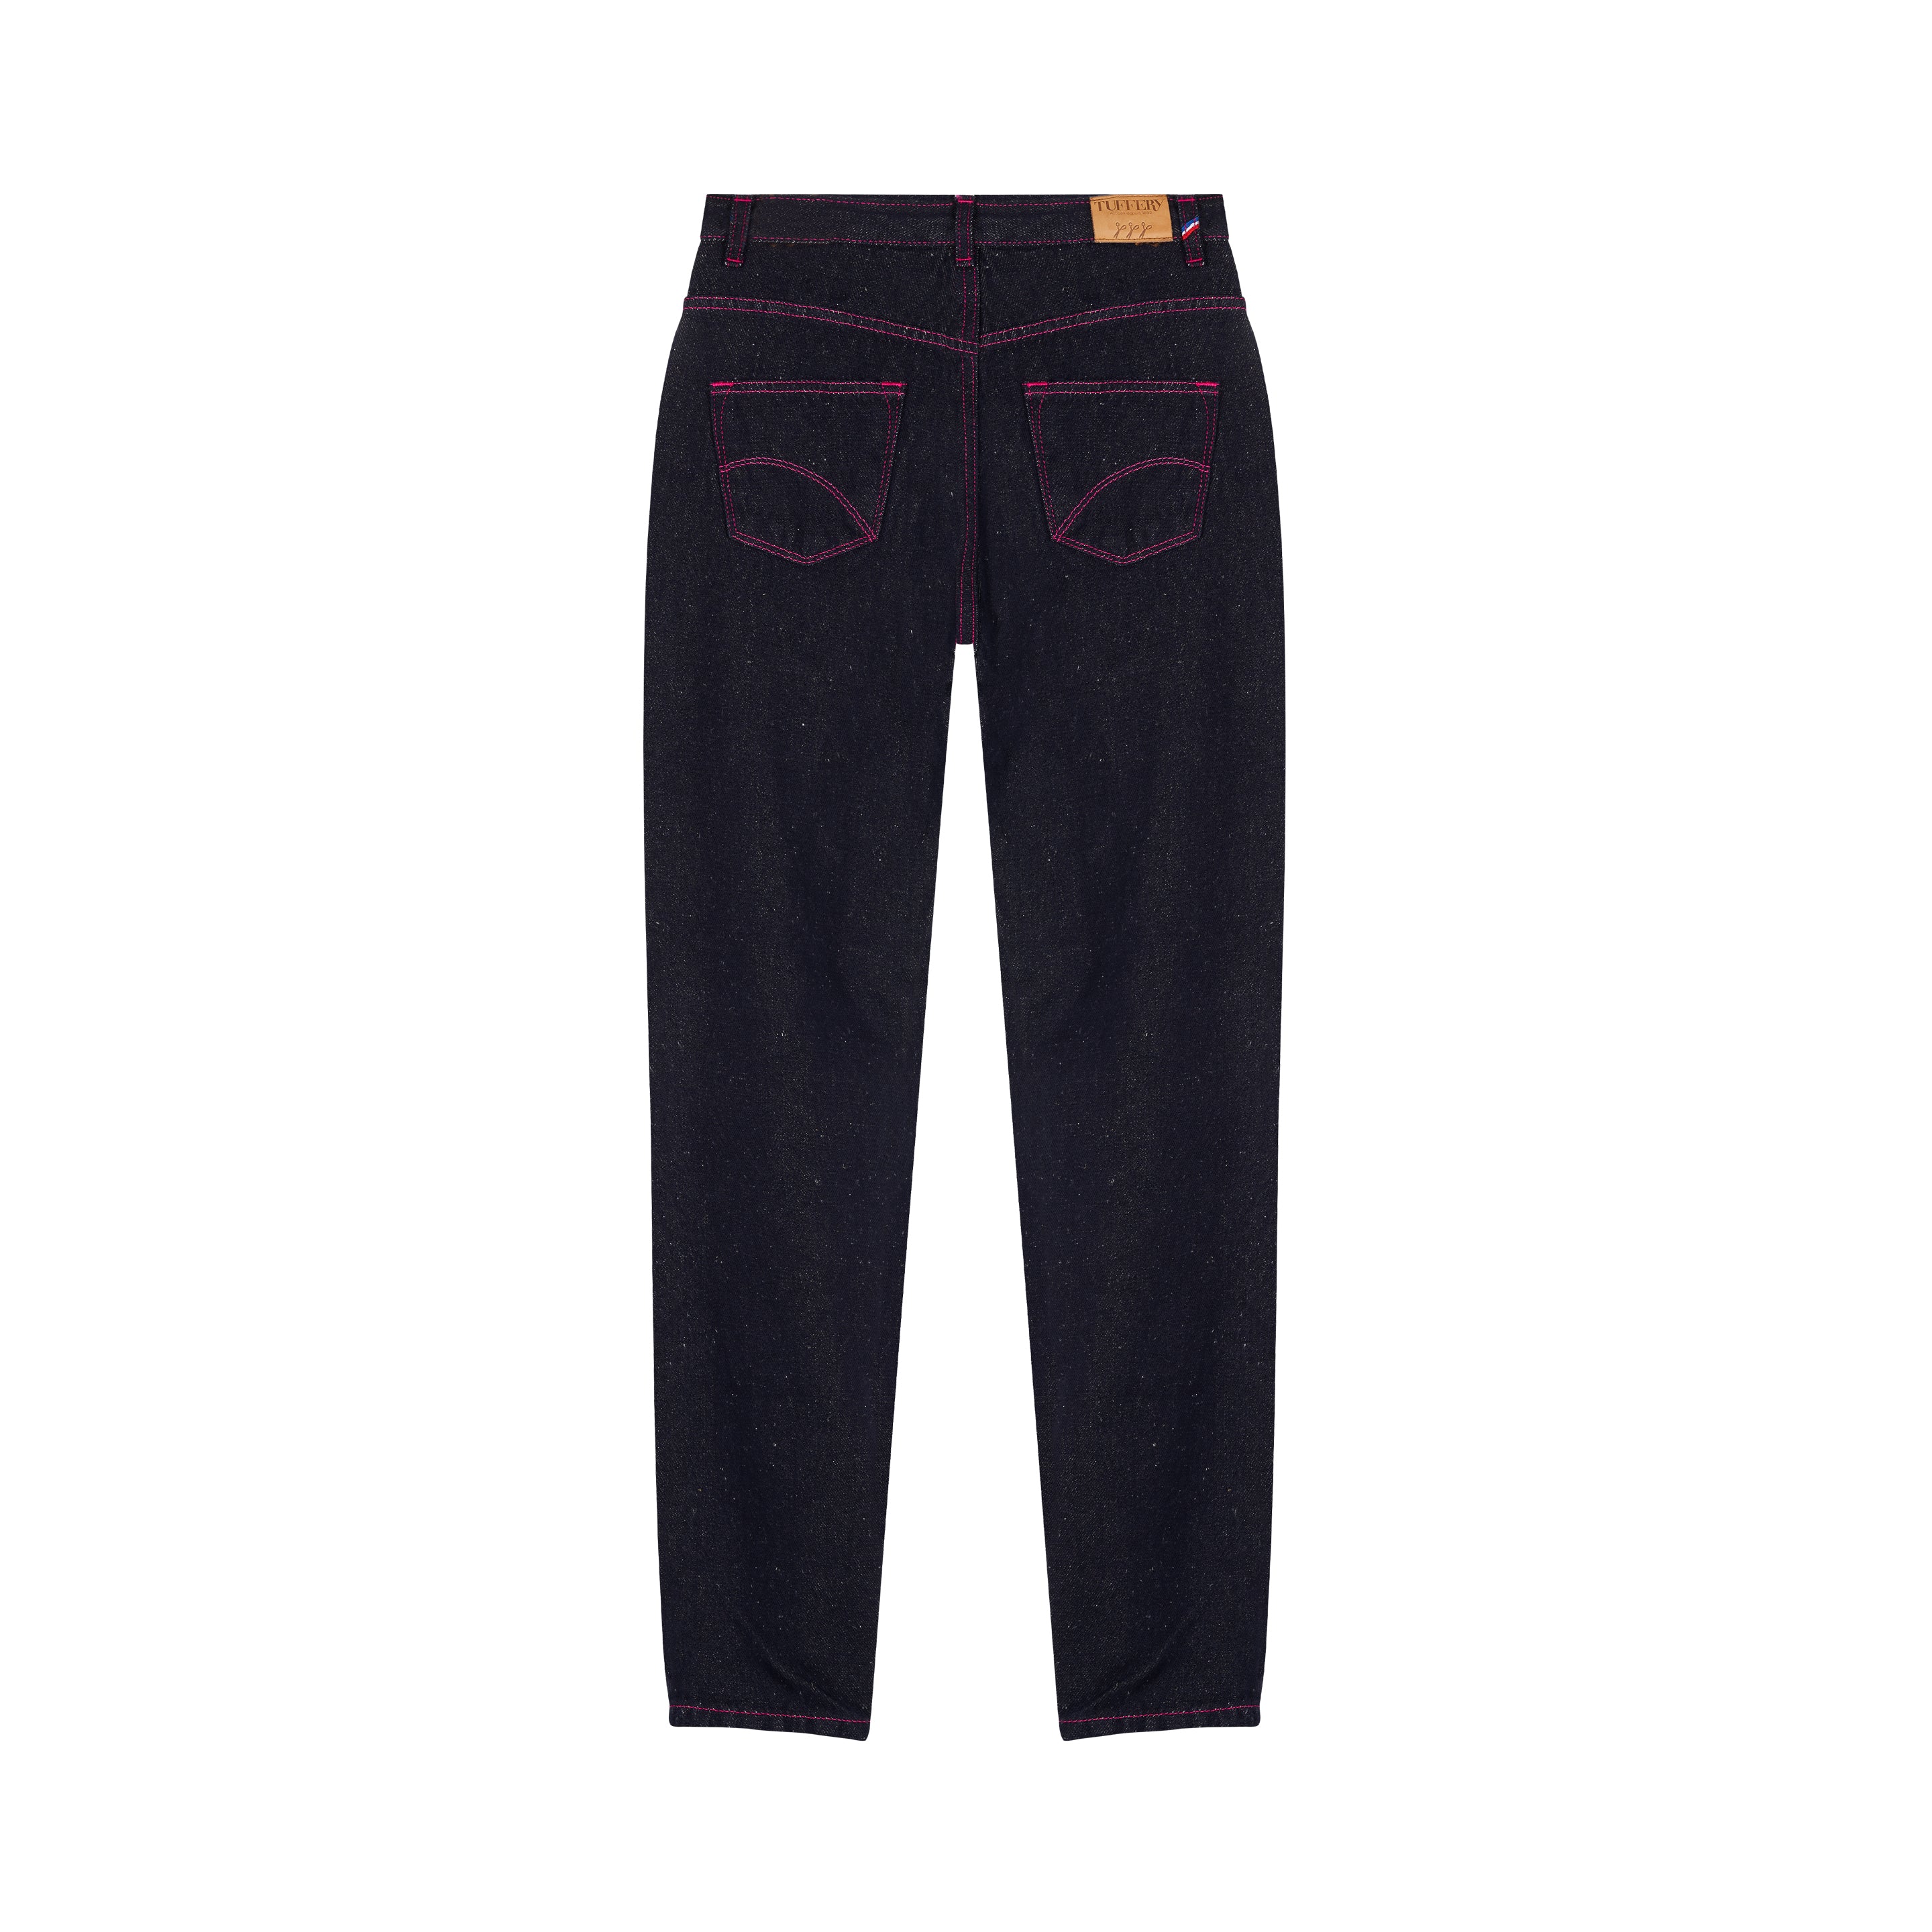 Hemp high waist mom jeans for women – Atelier Tuffery